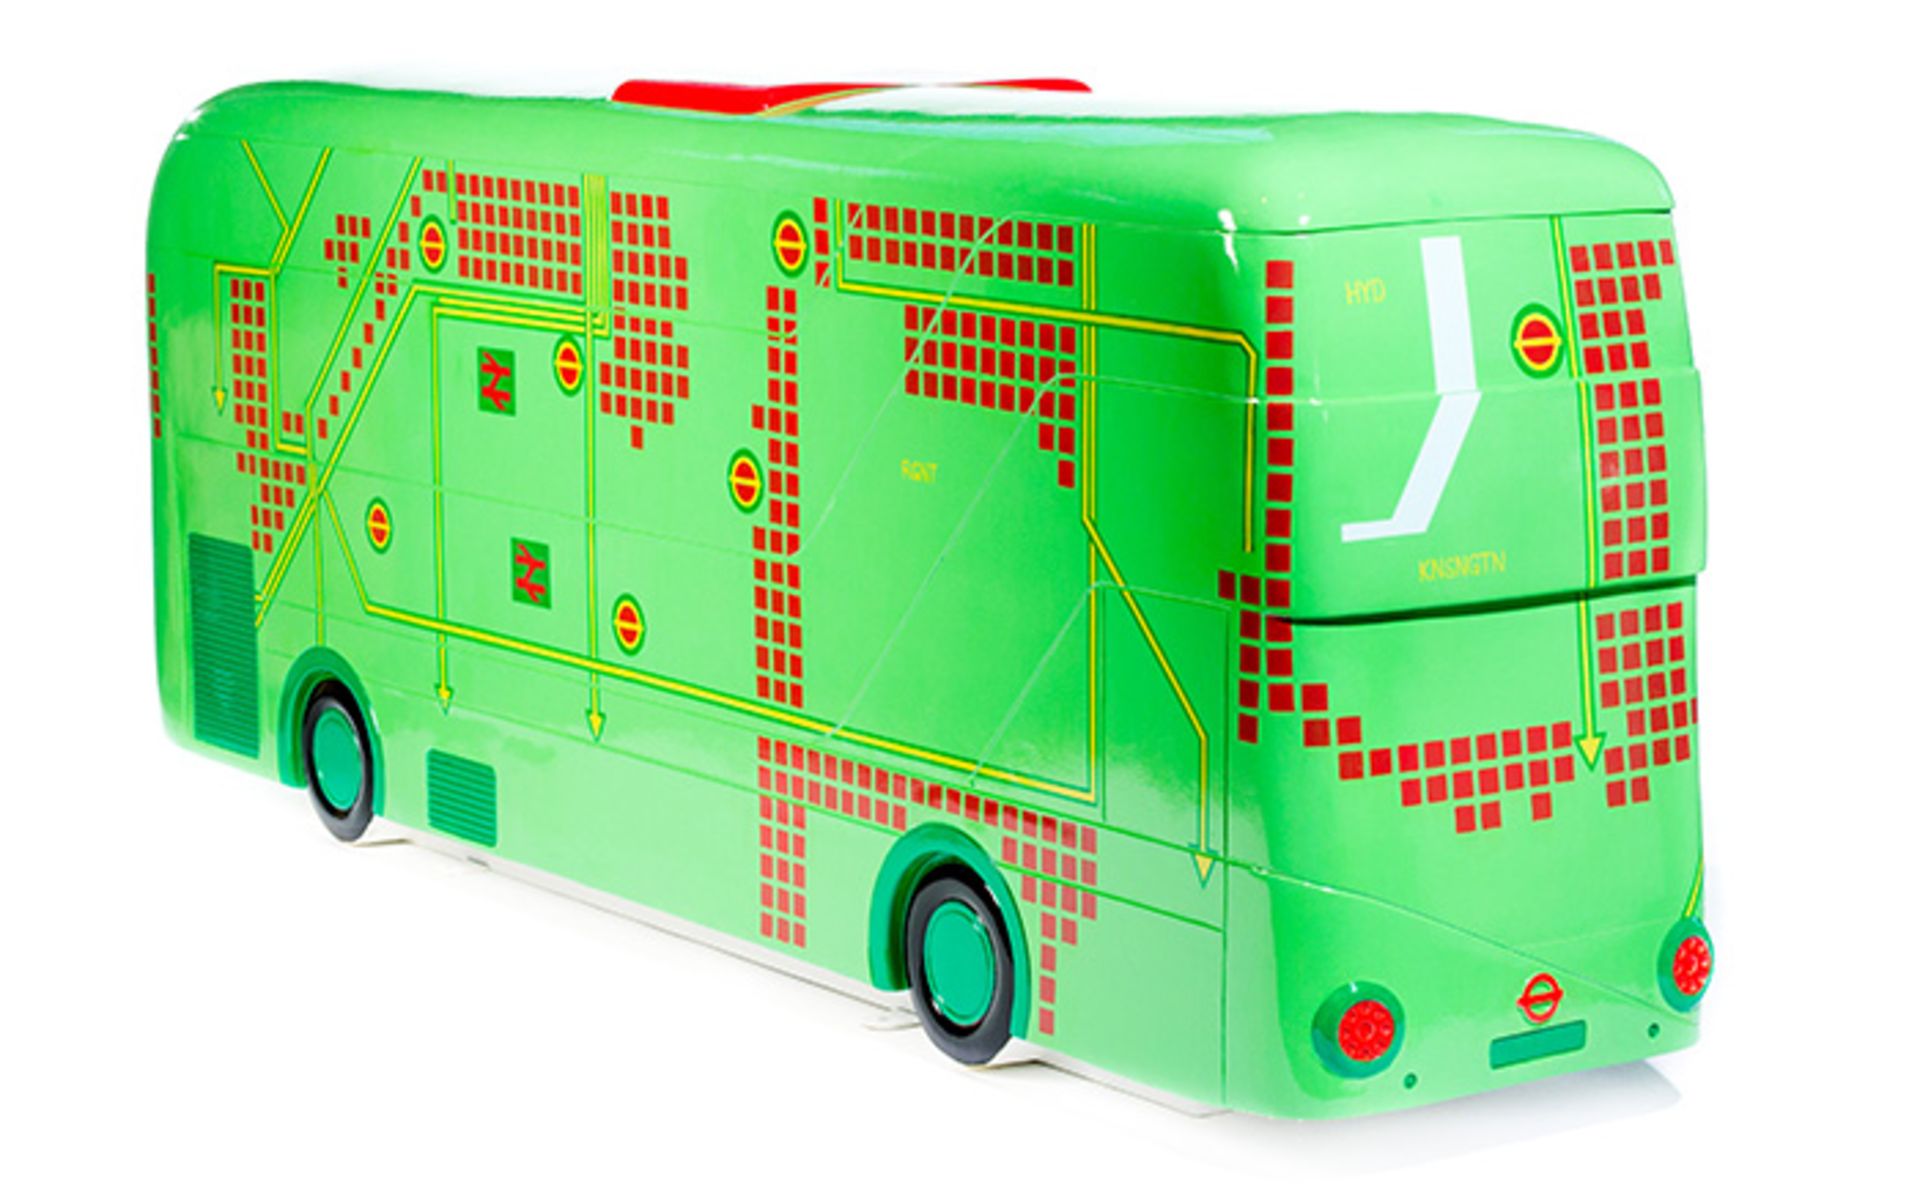 Design: Circuit Bus  Artist: Eloise Kerr    About the artist  Eloise Kerr is a Scottish artist and